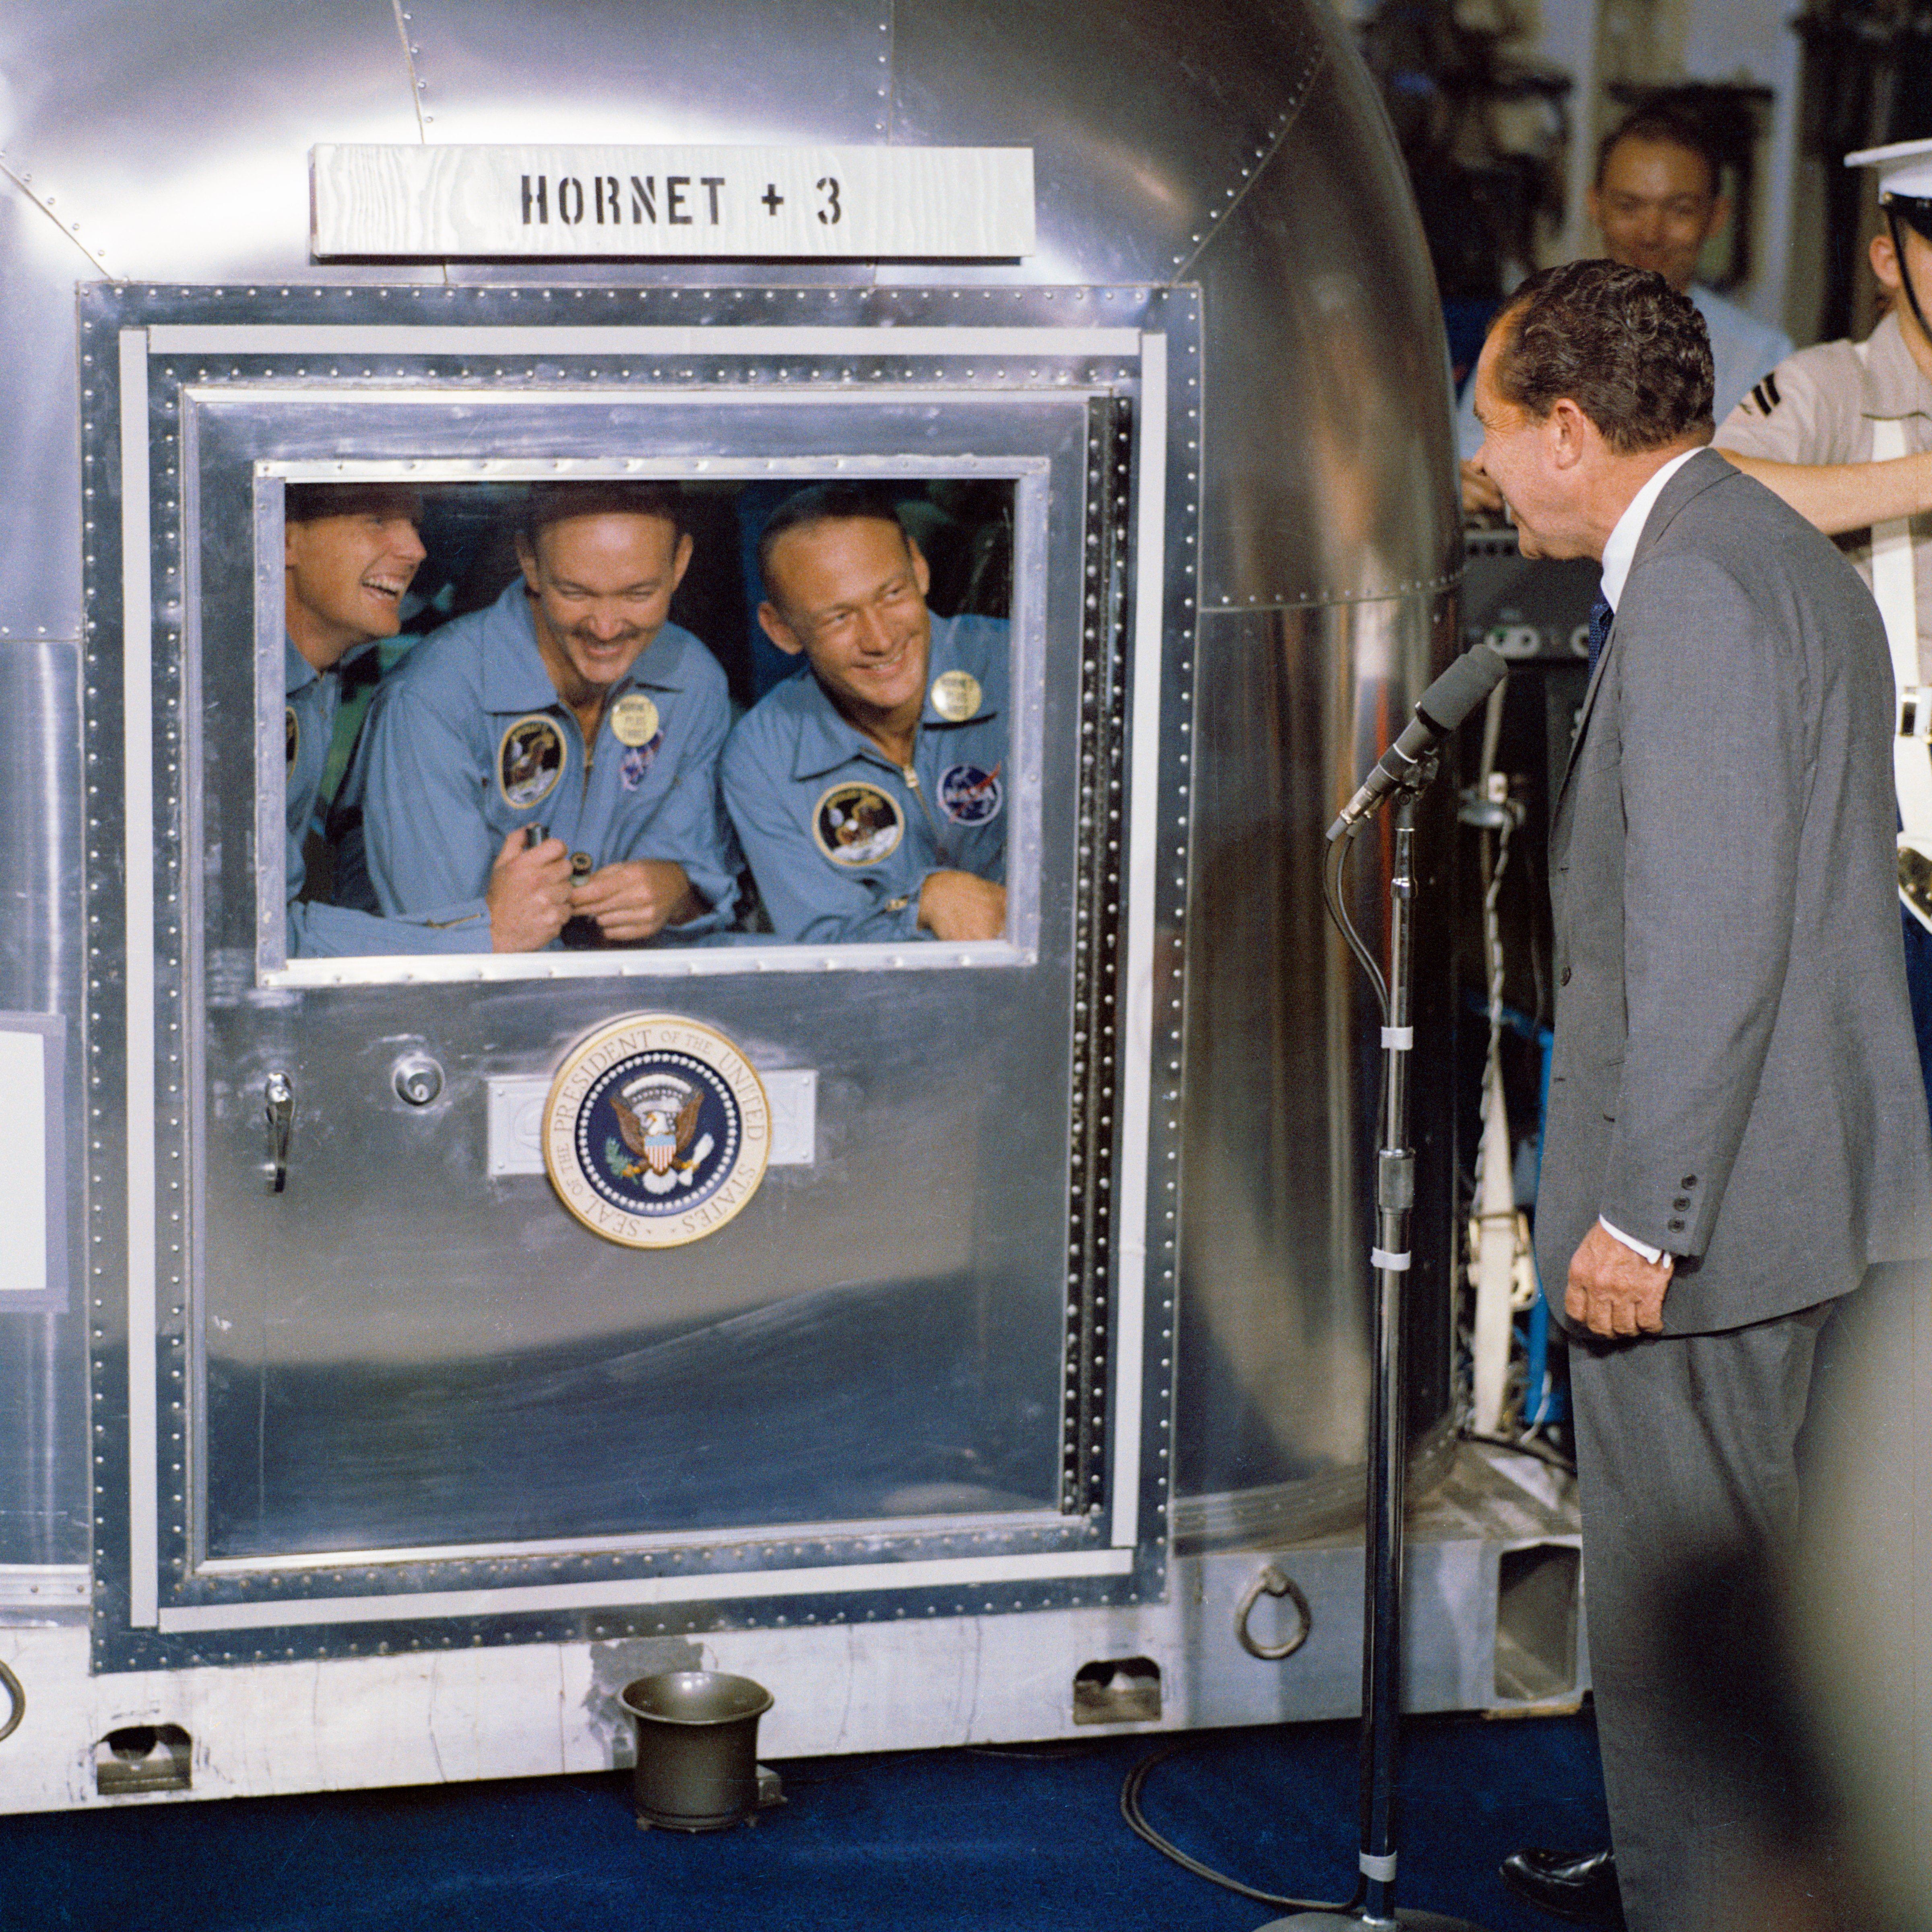 Apollo 11 quarantine